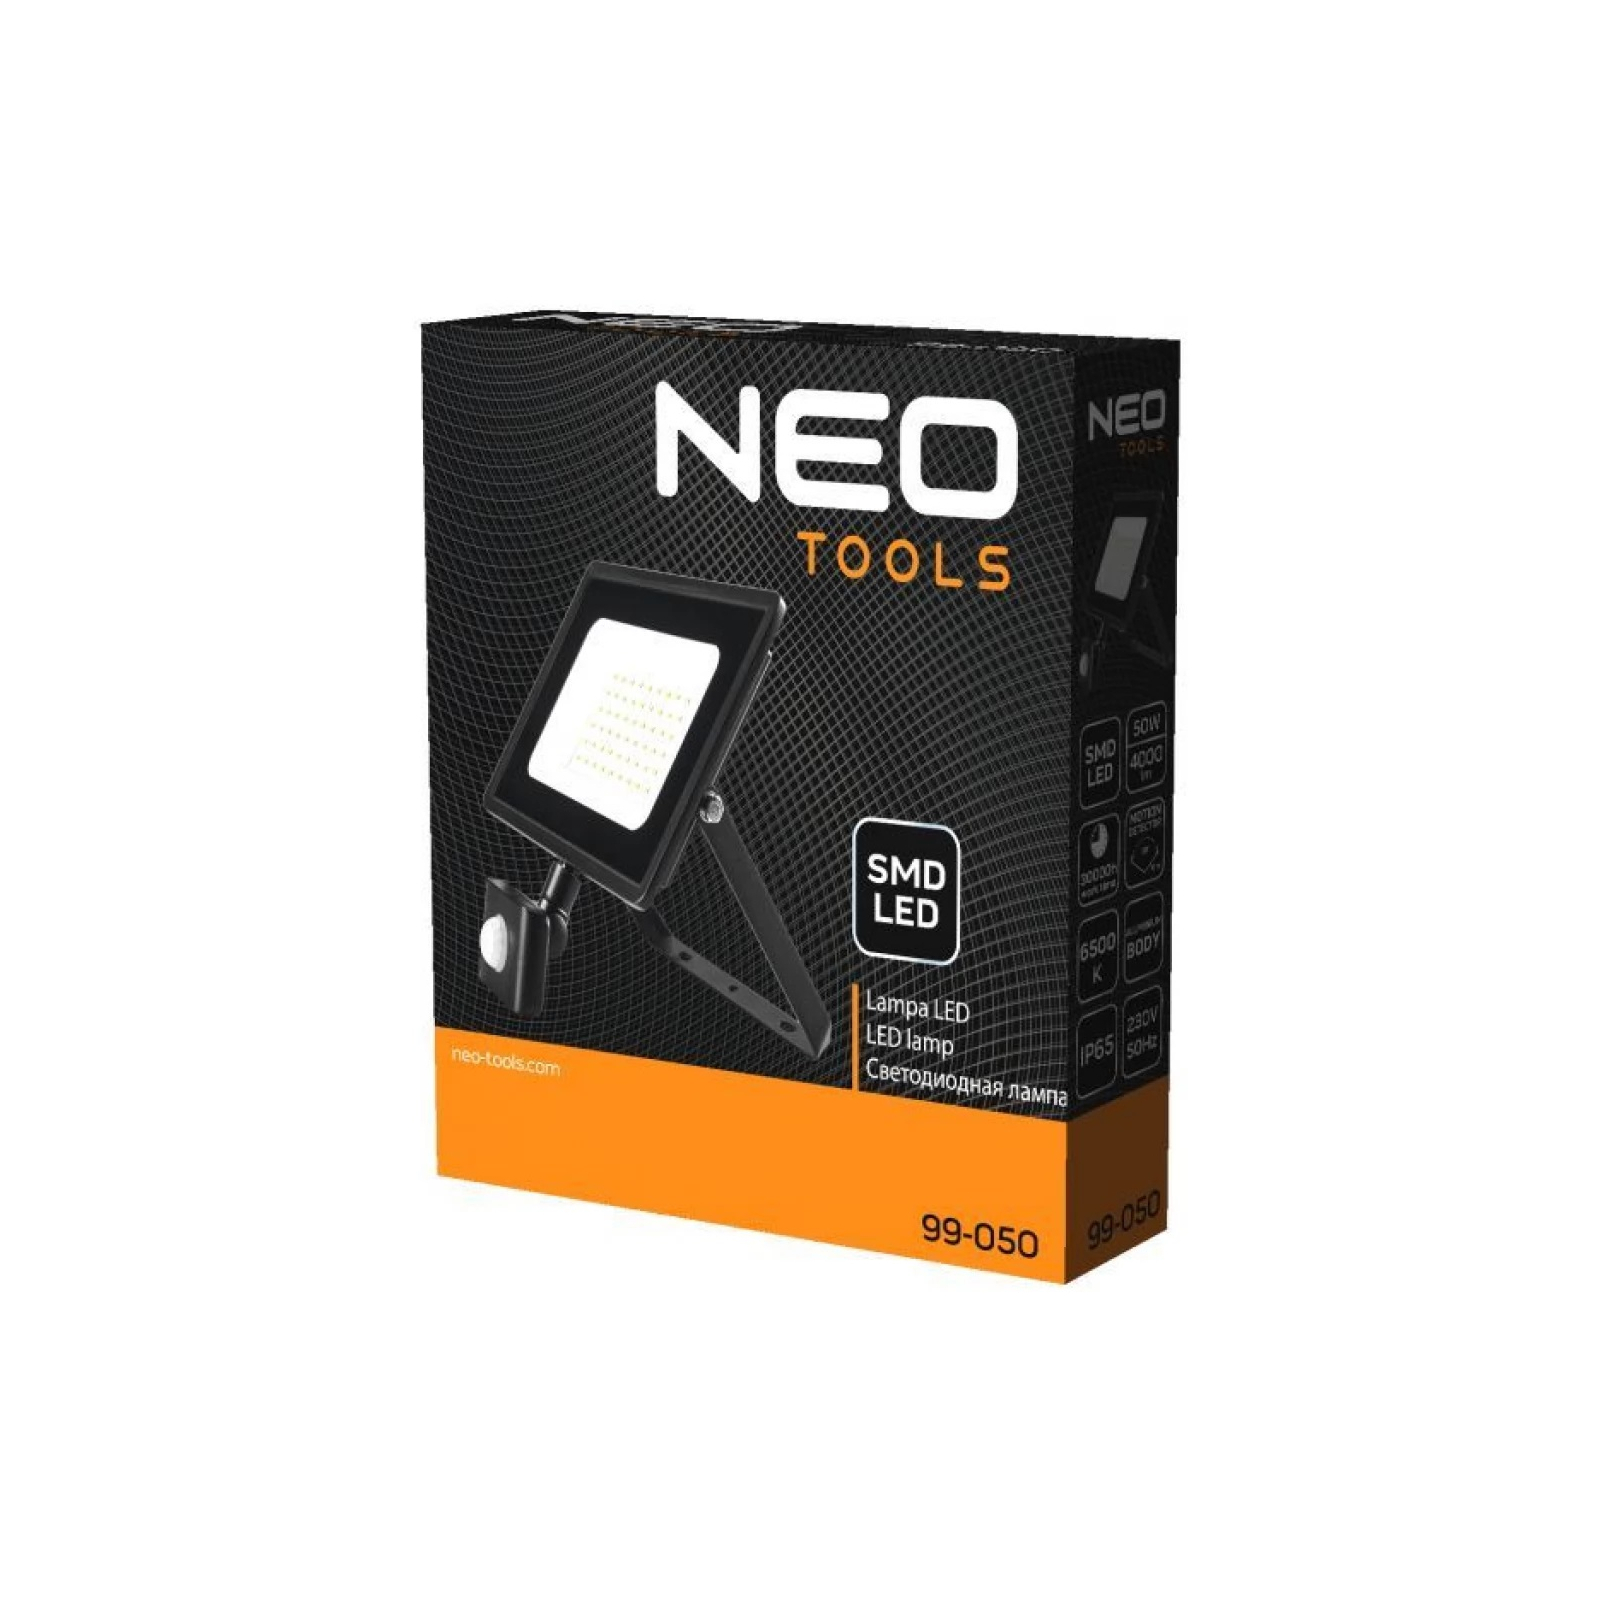 Прожектор Neo Tools алюминий, 220 В, 50Вт, 4000 люмен, SMD LED, кабель 0.15м без (99-050) изображение 4